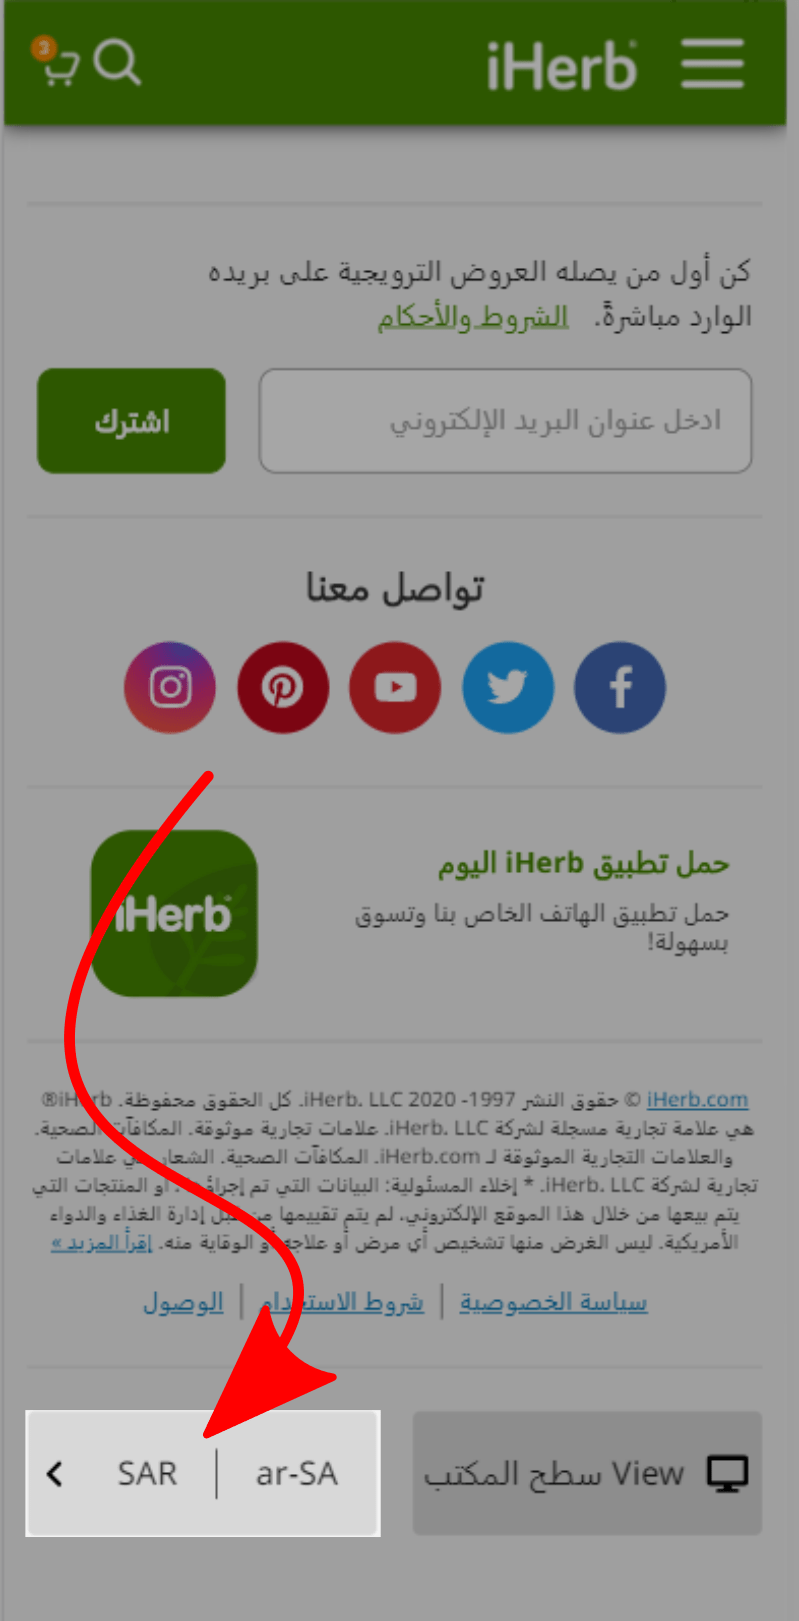 تعديل موقع اي هيرب ليكون بالعربي في مصر